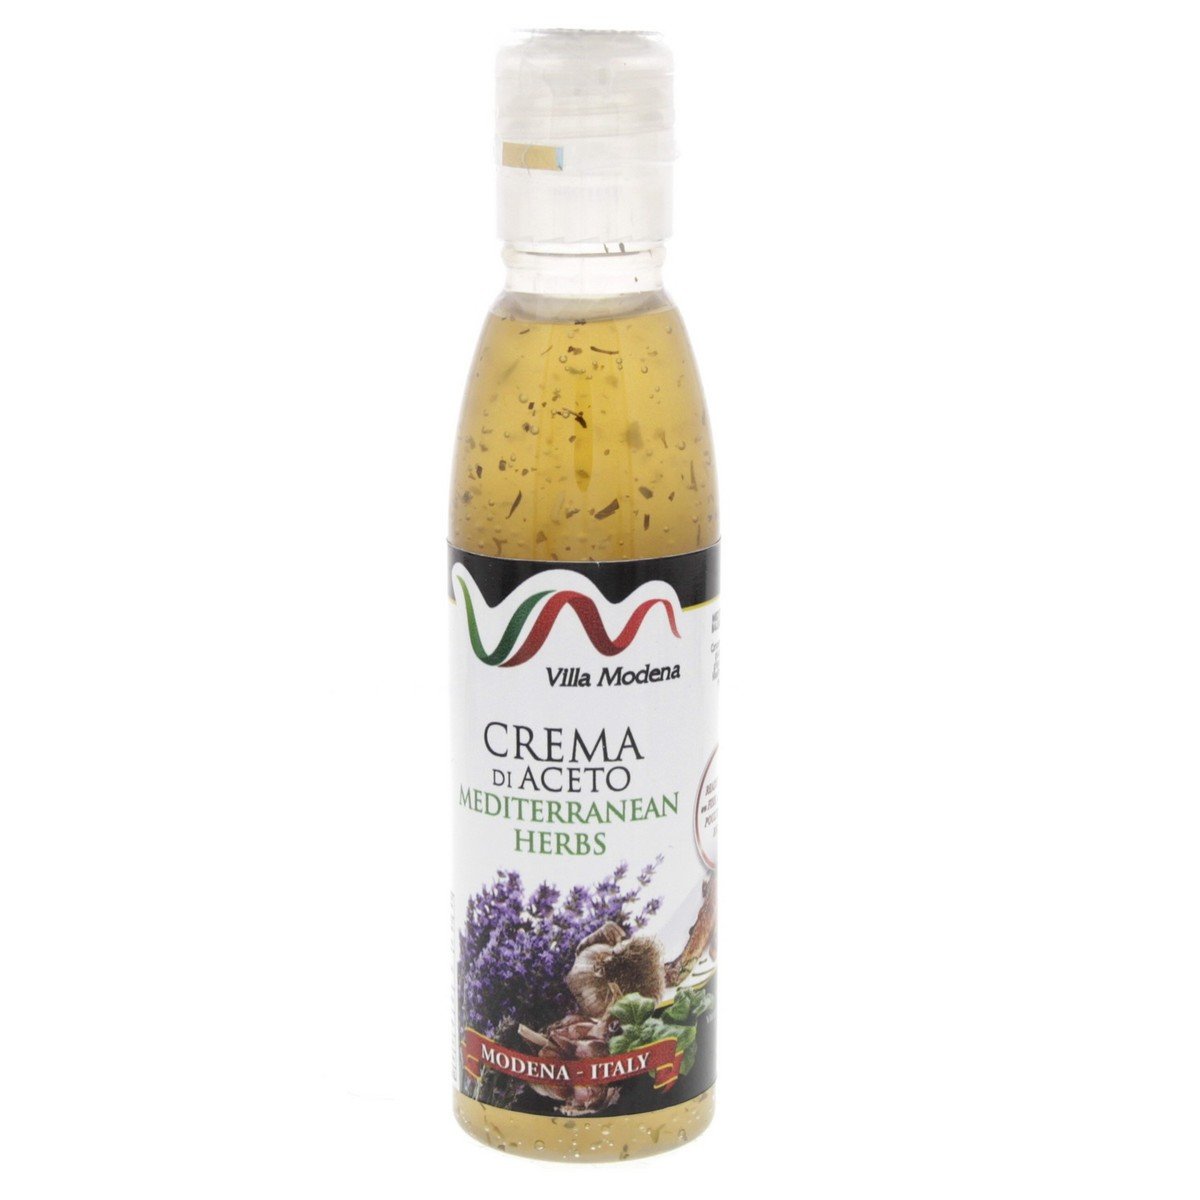 Villa Modena Crema Di Aceto Mediterranean Herbs 150 ml